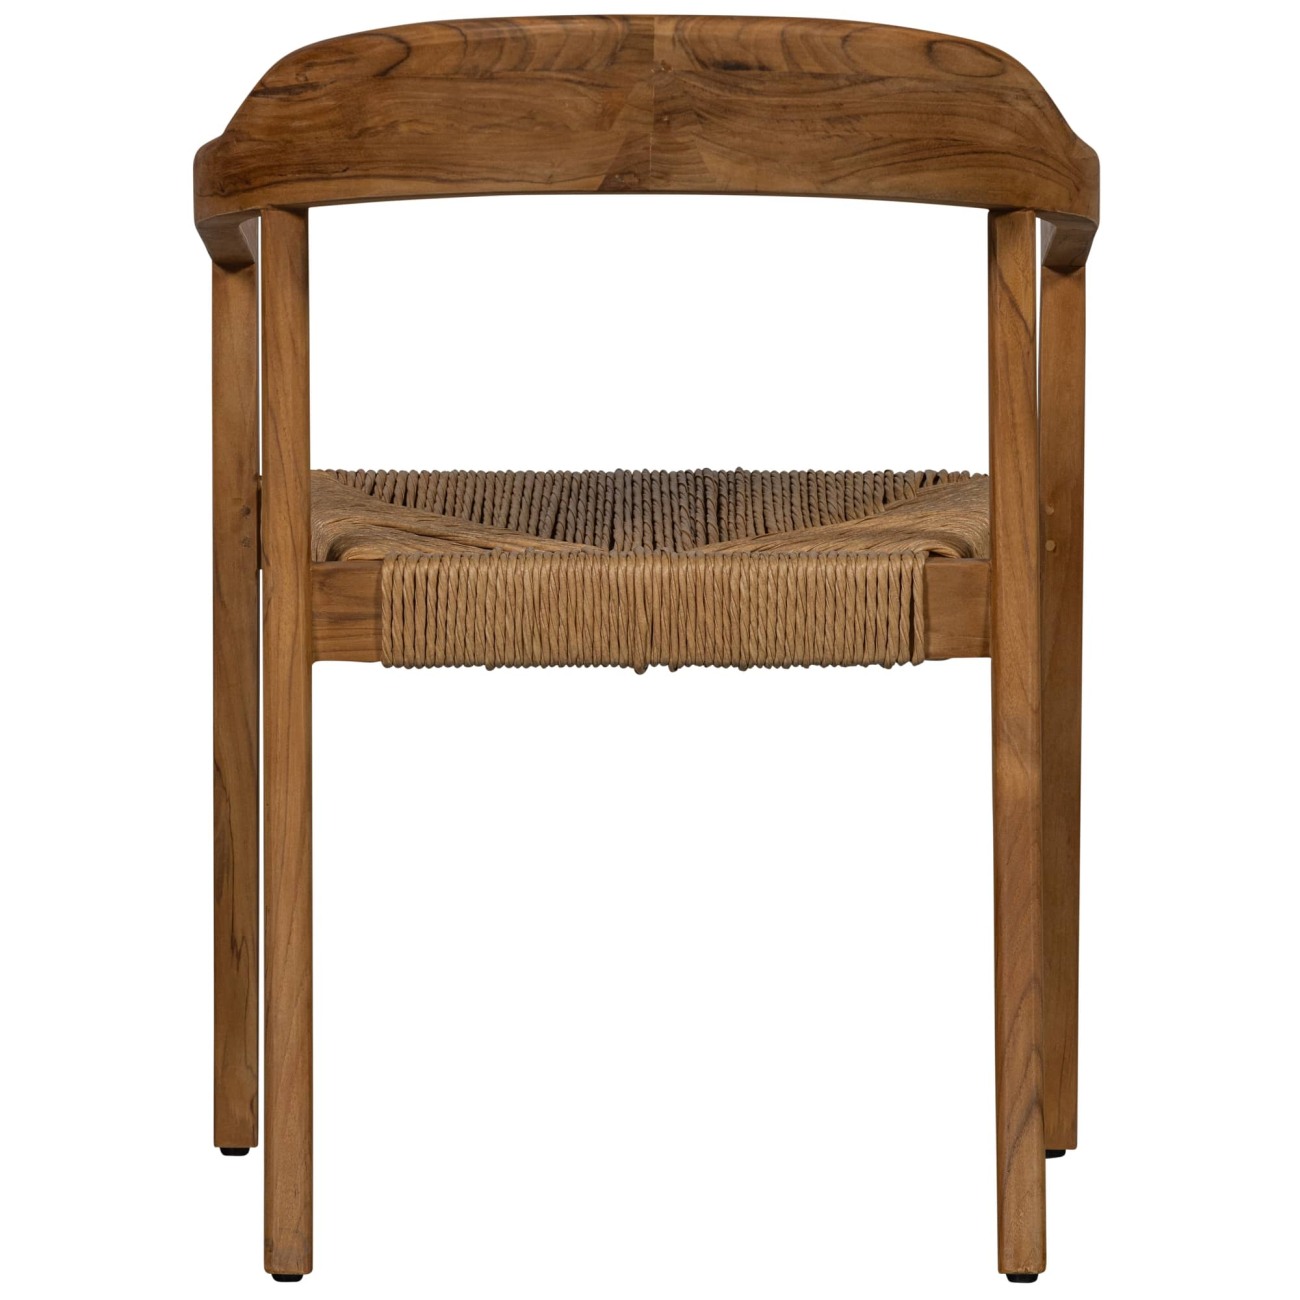 Der Gartenstuhl Chena überzeugt mit seinem modernen Design. Gefertigt wurde er aus Geflecht, welches einen natürlichen Farbton besitzt. Das Gestell ist aus Teakholz und hat eine natürliche Farbe. Der Stuhl besitzt eine Sitzhöhe von 46 cm.